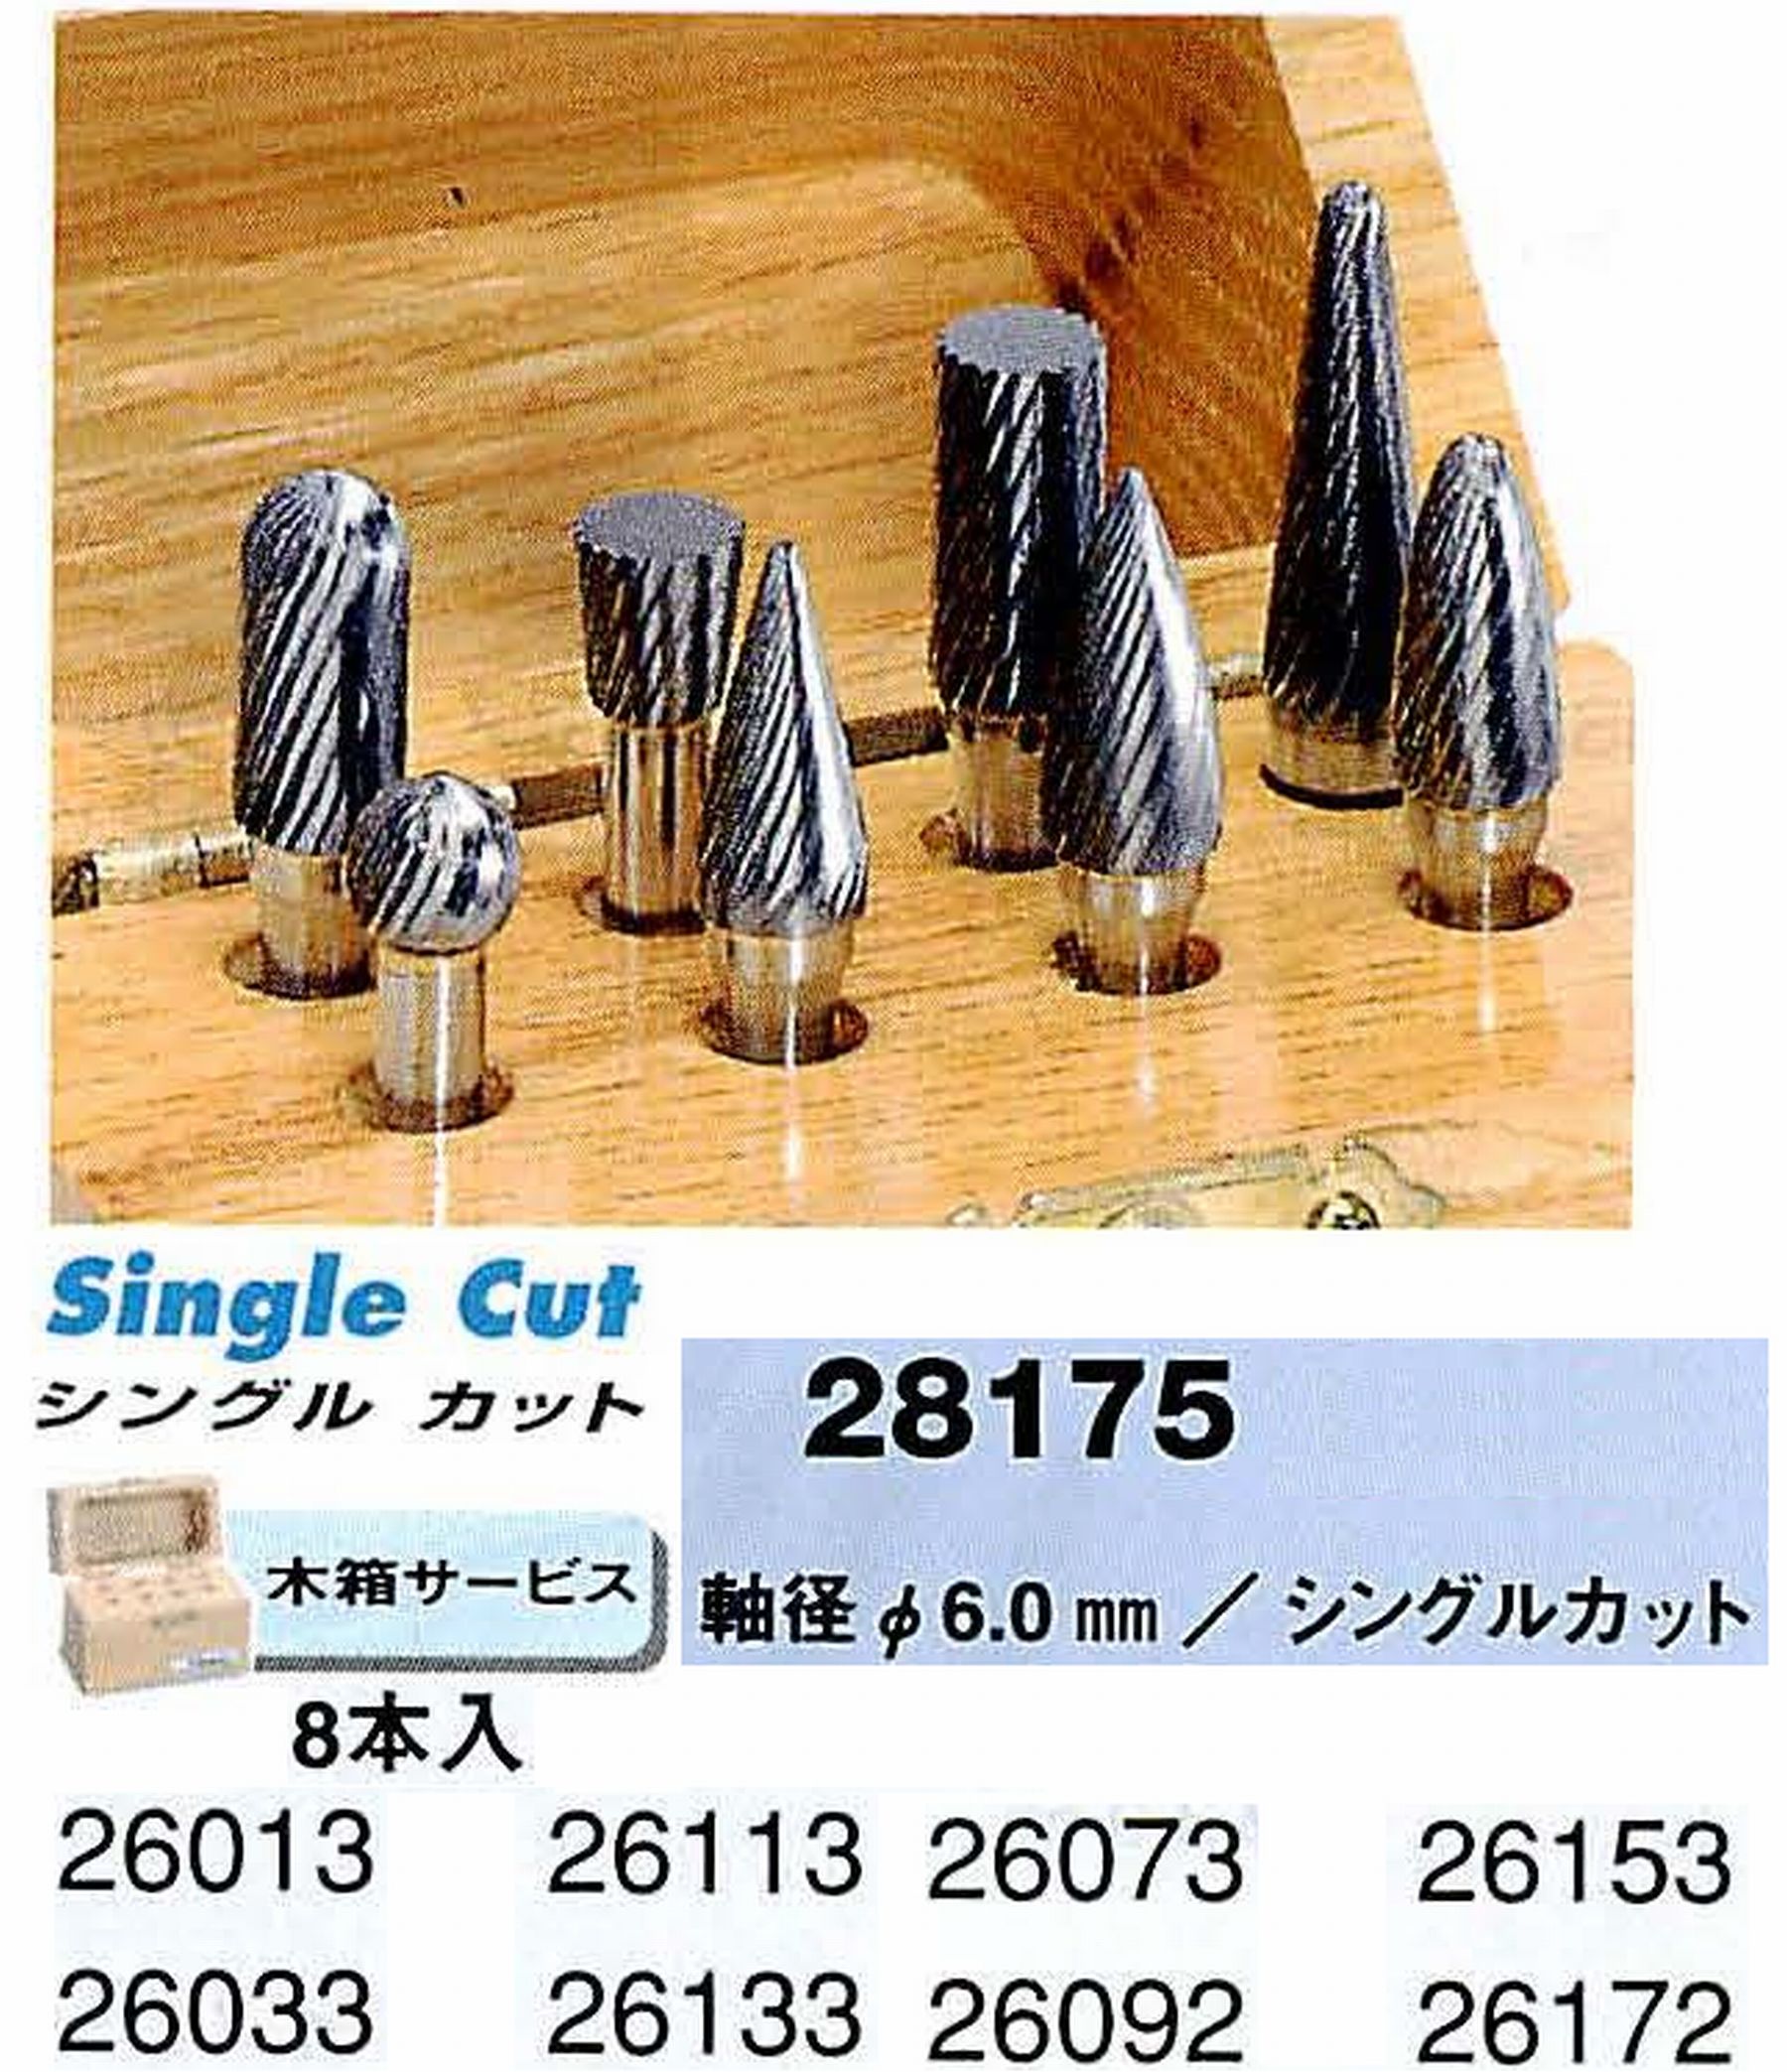 ナカニシ/NAKANISHI 超硬カッター アソートセット 軸径(シャンク)φ6.0mm 28175